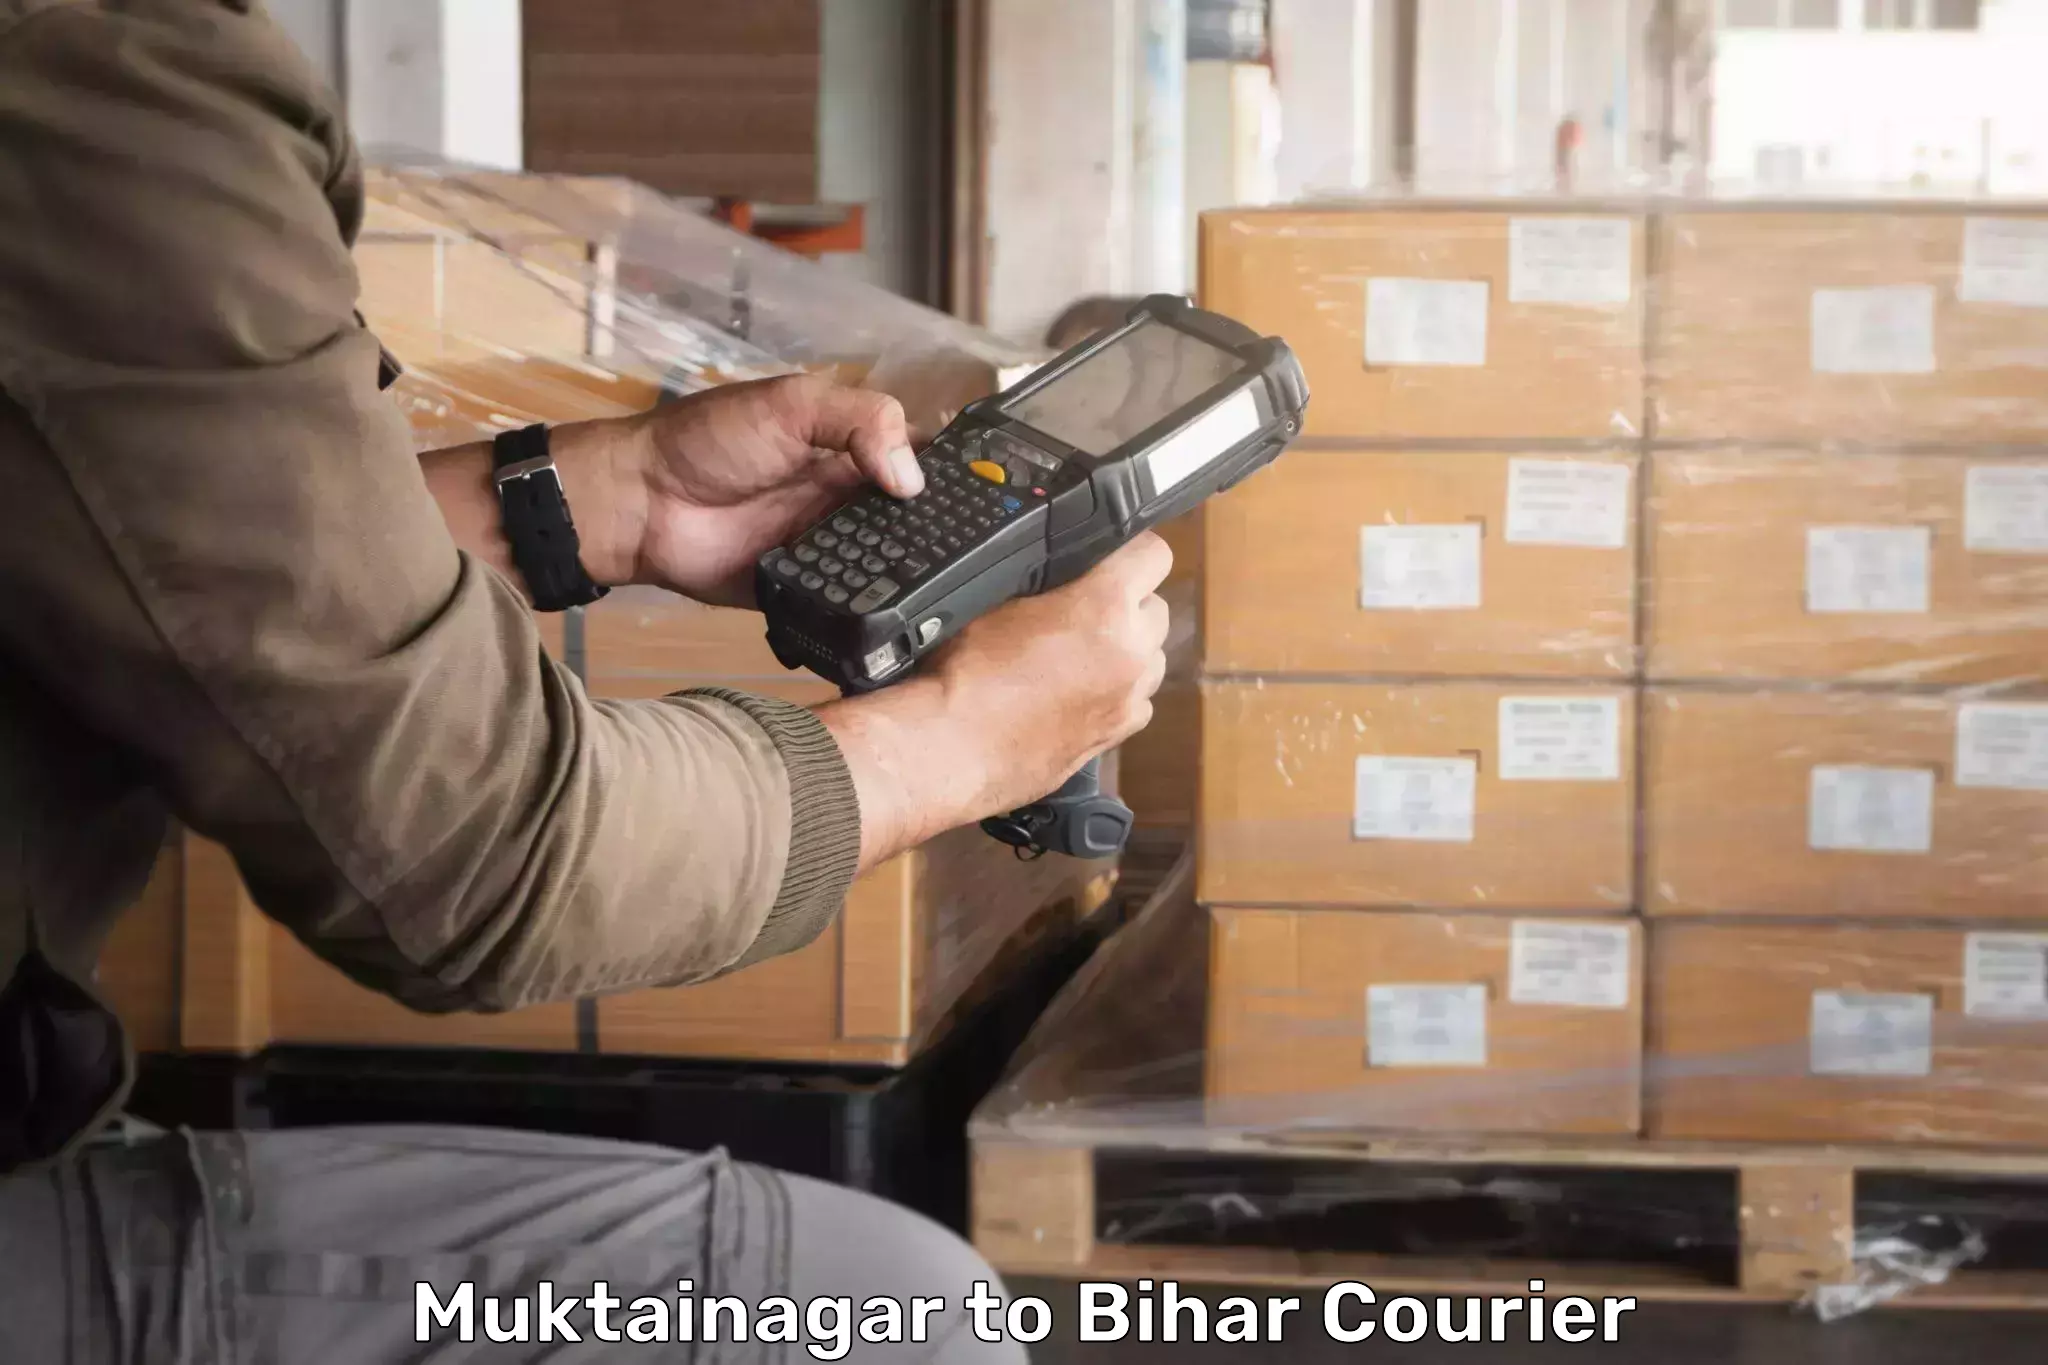 Urgent courier needs Muktainagar to Kudra